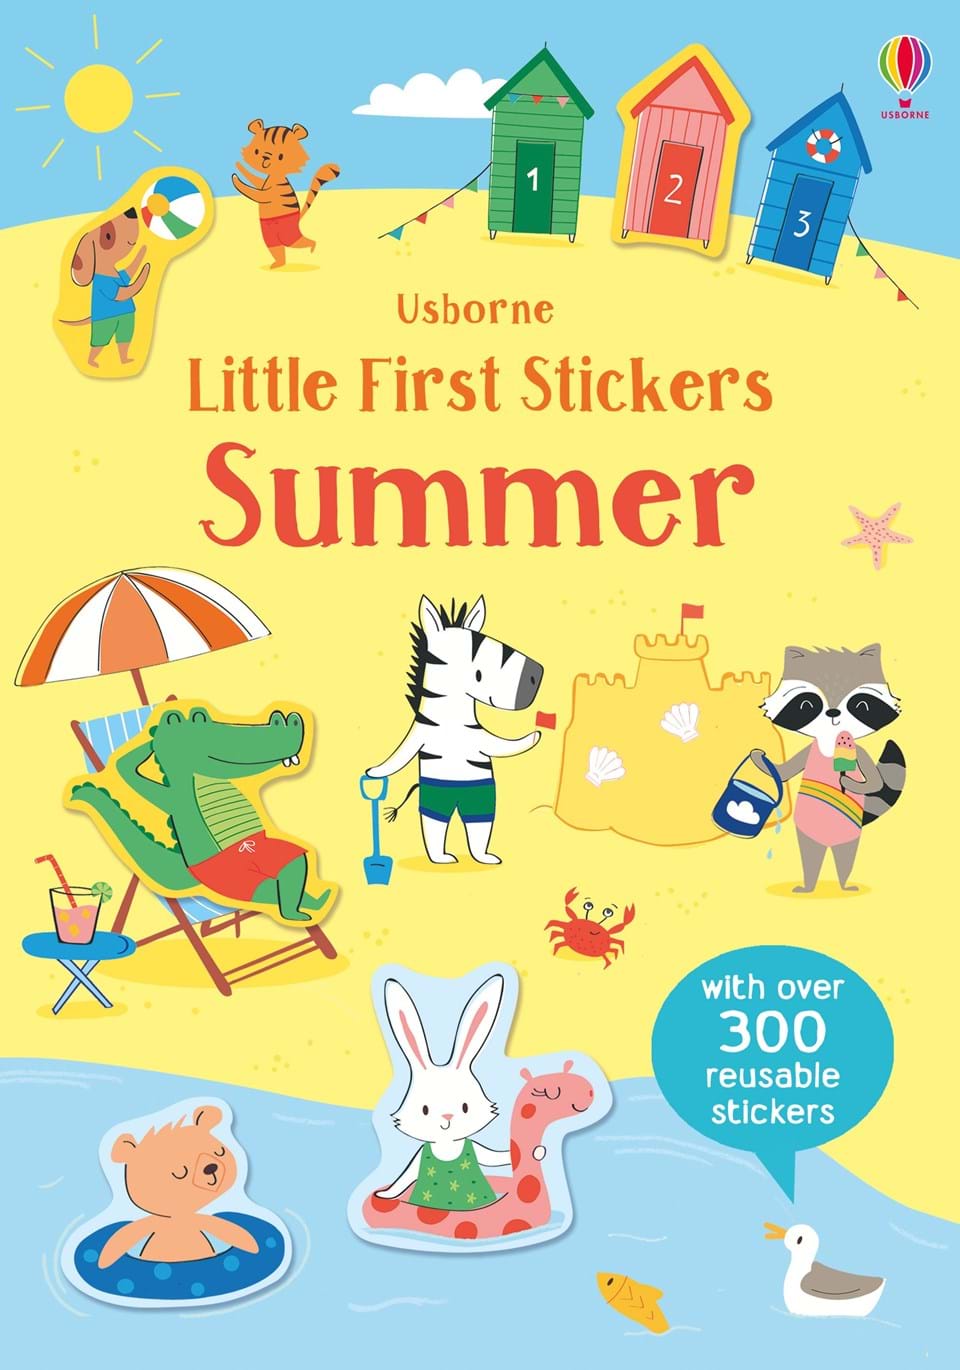 Little first stickers summer